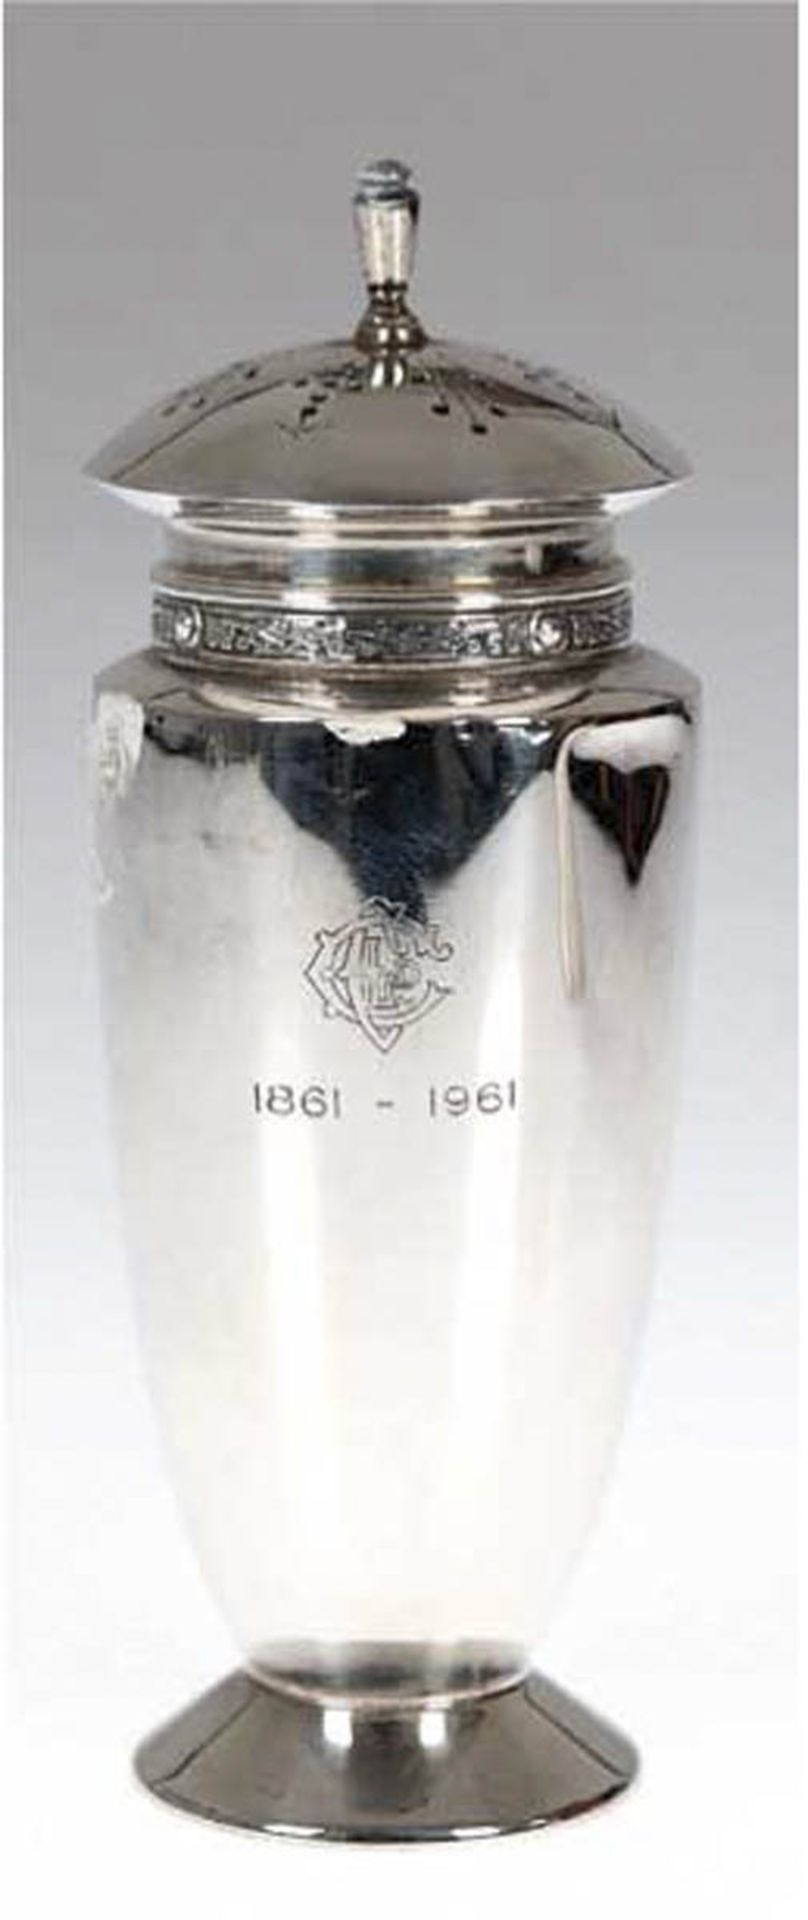 Zuckerstreuer, 925er Sterlingsilber, mit Gravur "1861-1961", H. 16 cm, Gew. 121 g